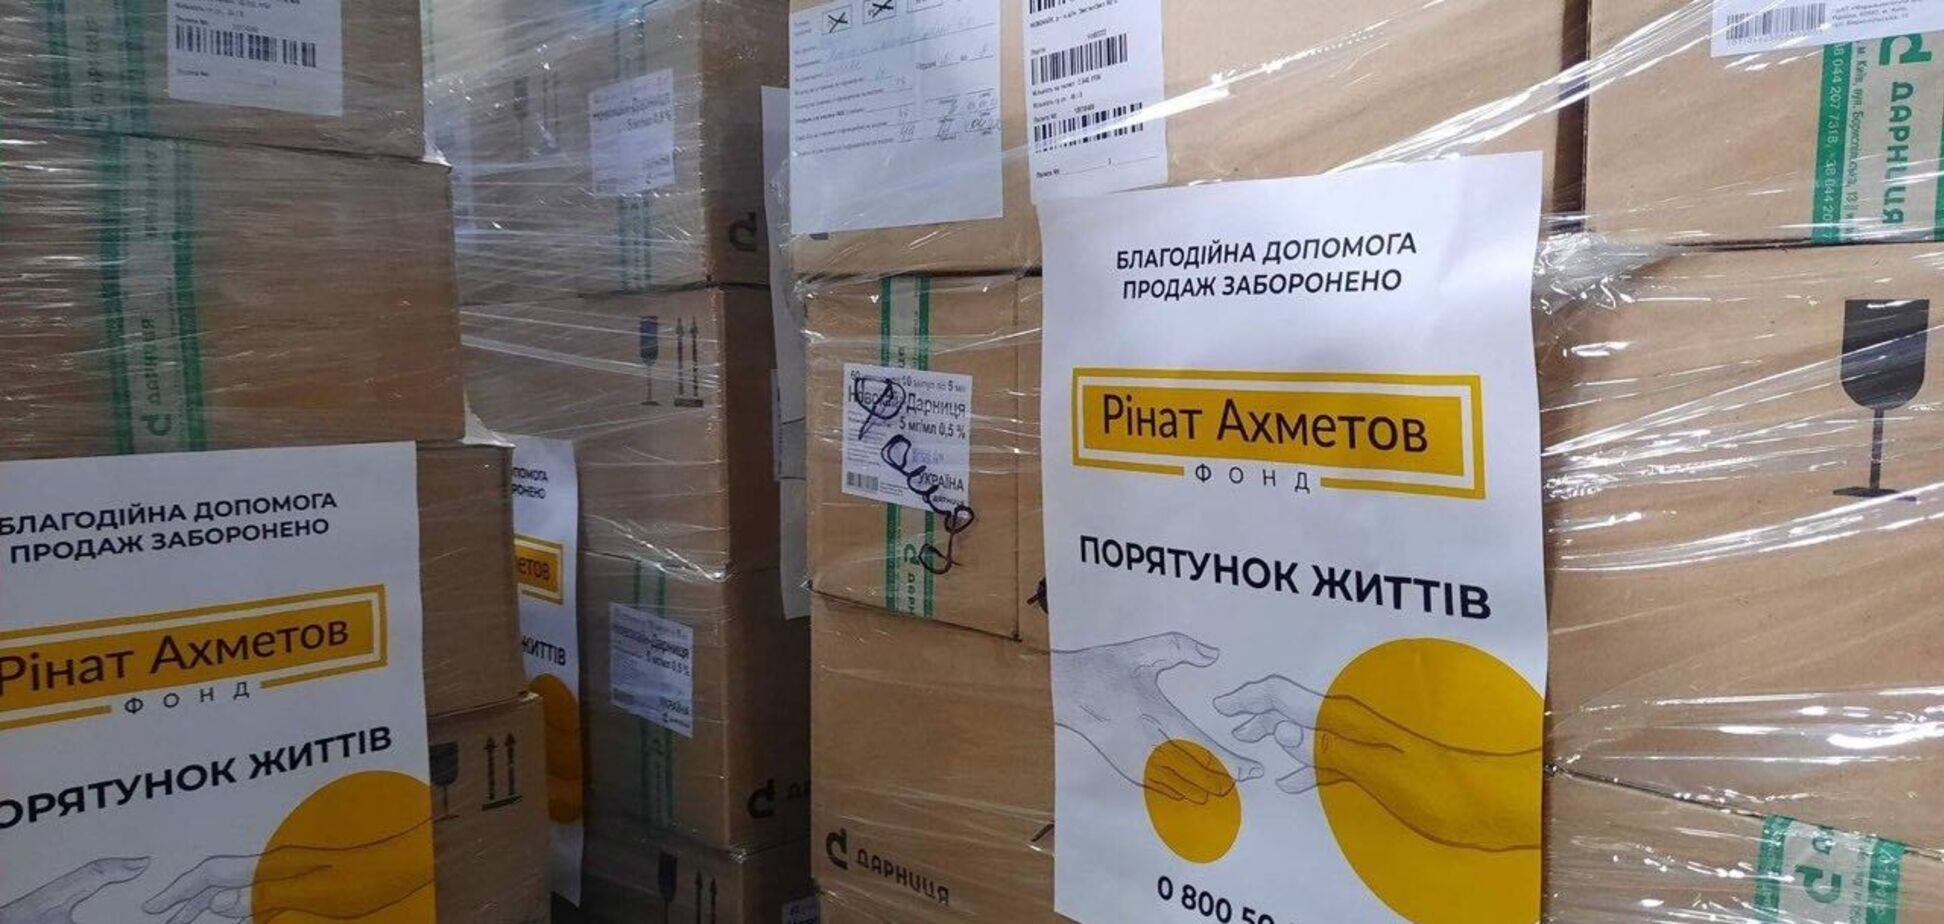 Фонд Ріната Ахметова передав чергову партію медикаментів до Донецької області